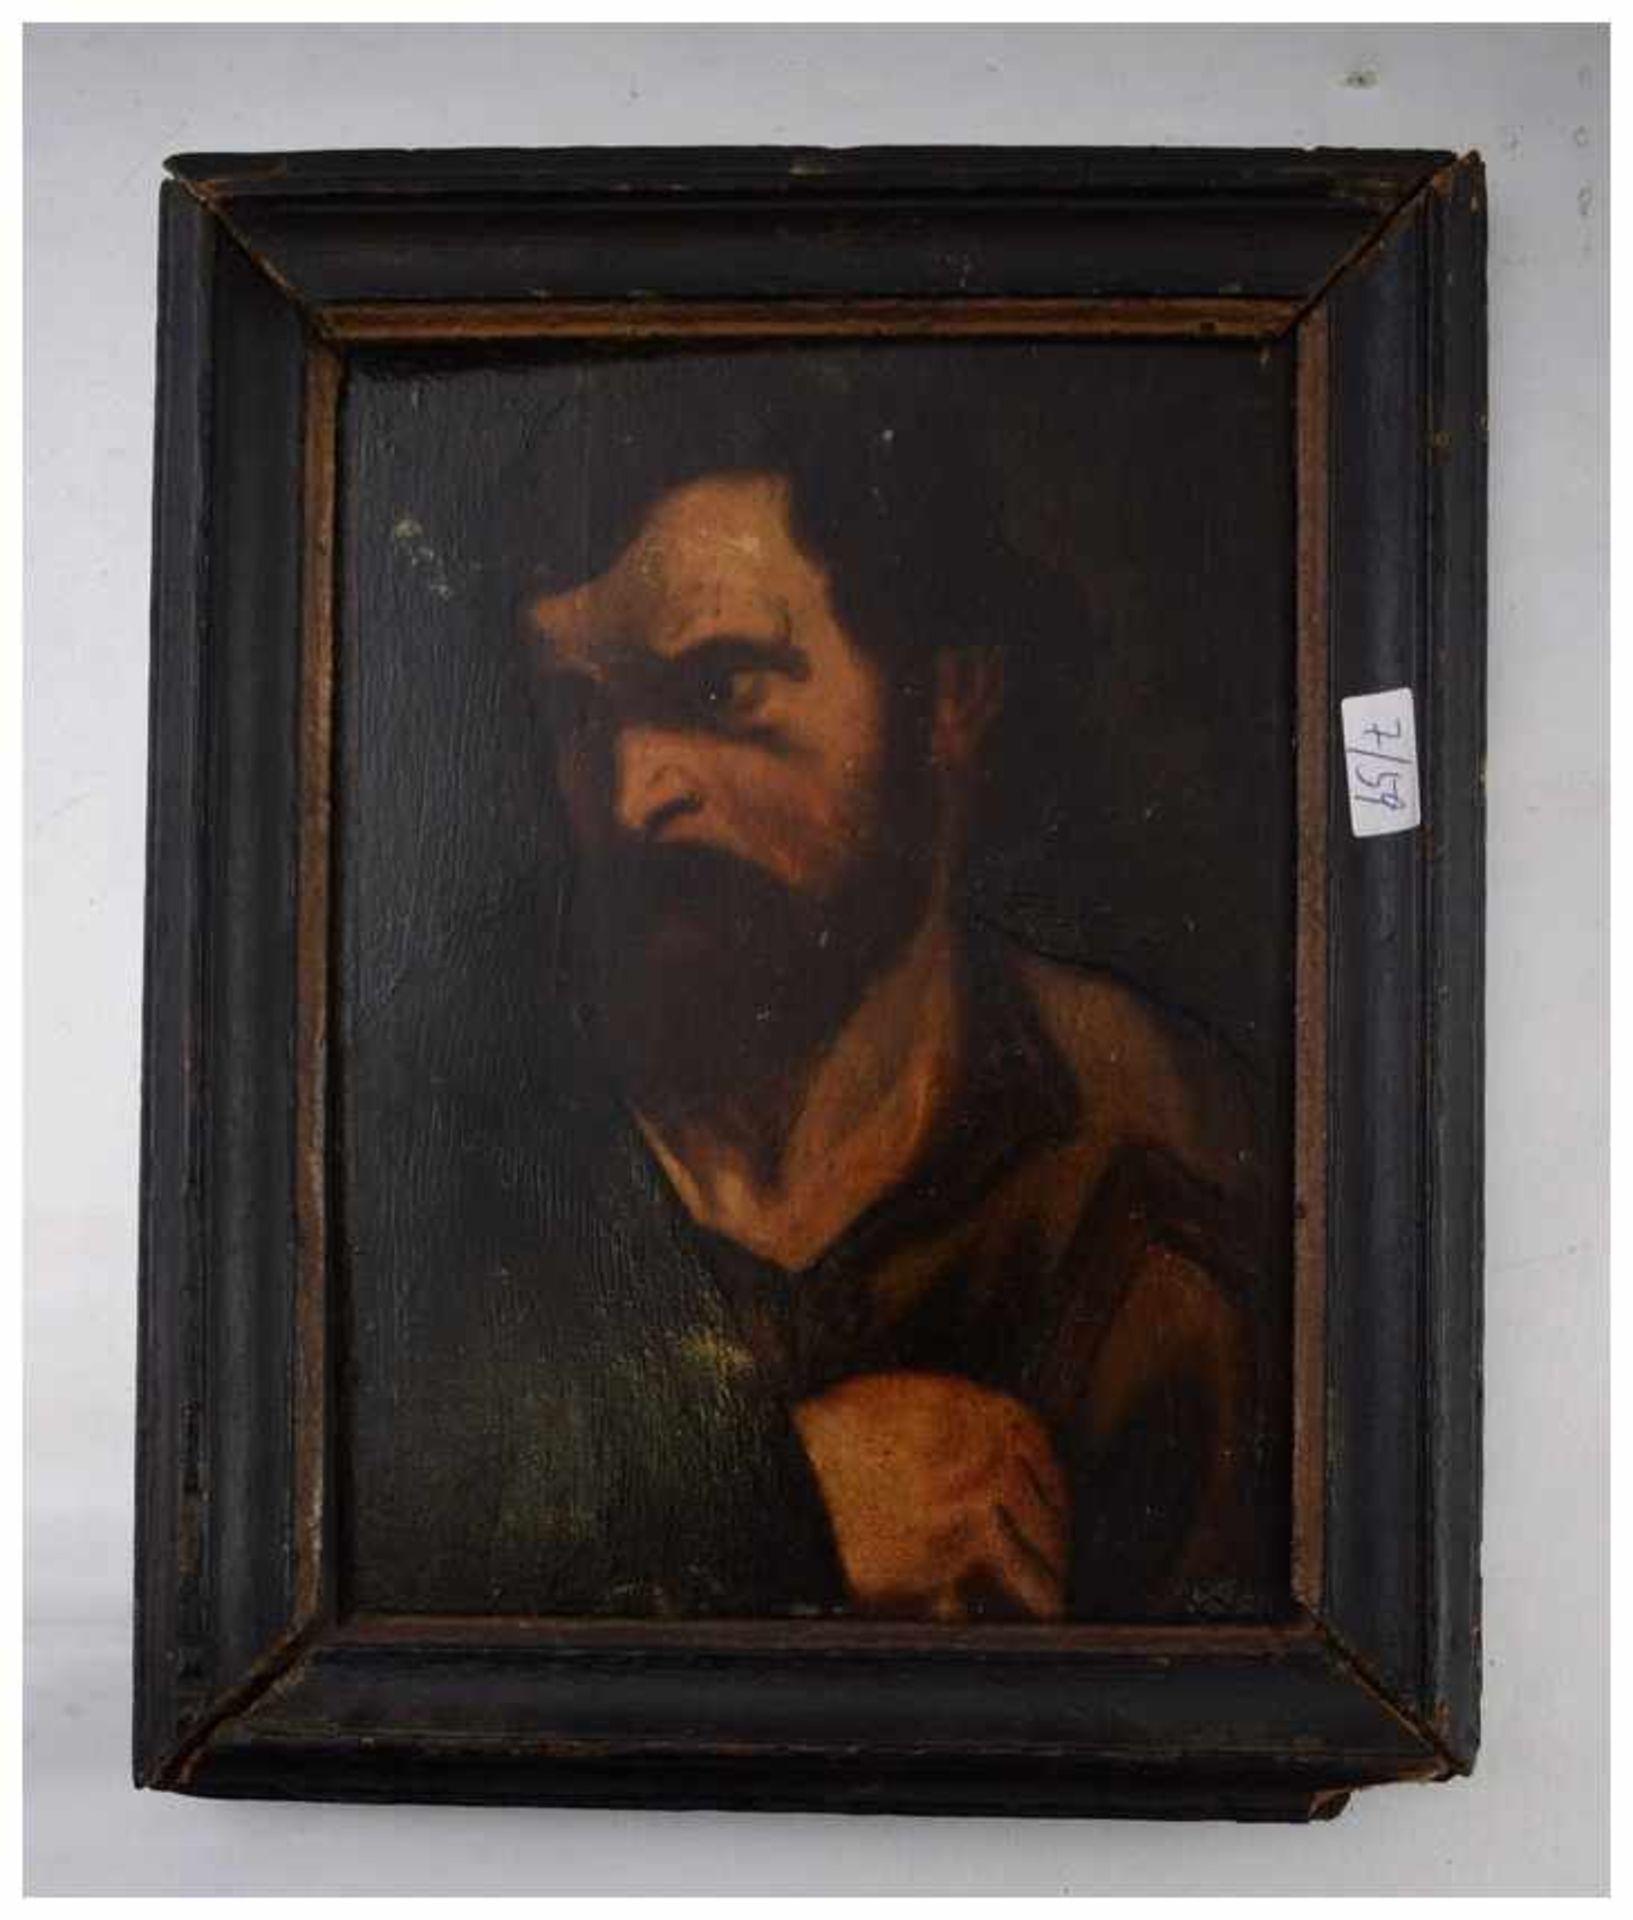 Unbekannter Maler 18. Jh., Portrait eines bärtigen Herrn, Öl/Holz, 17 X 24 cm, schwarzer Rahmen